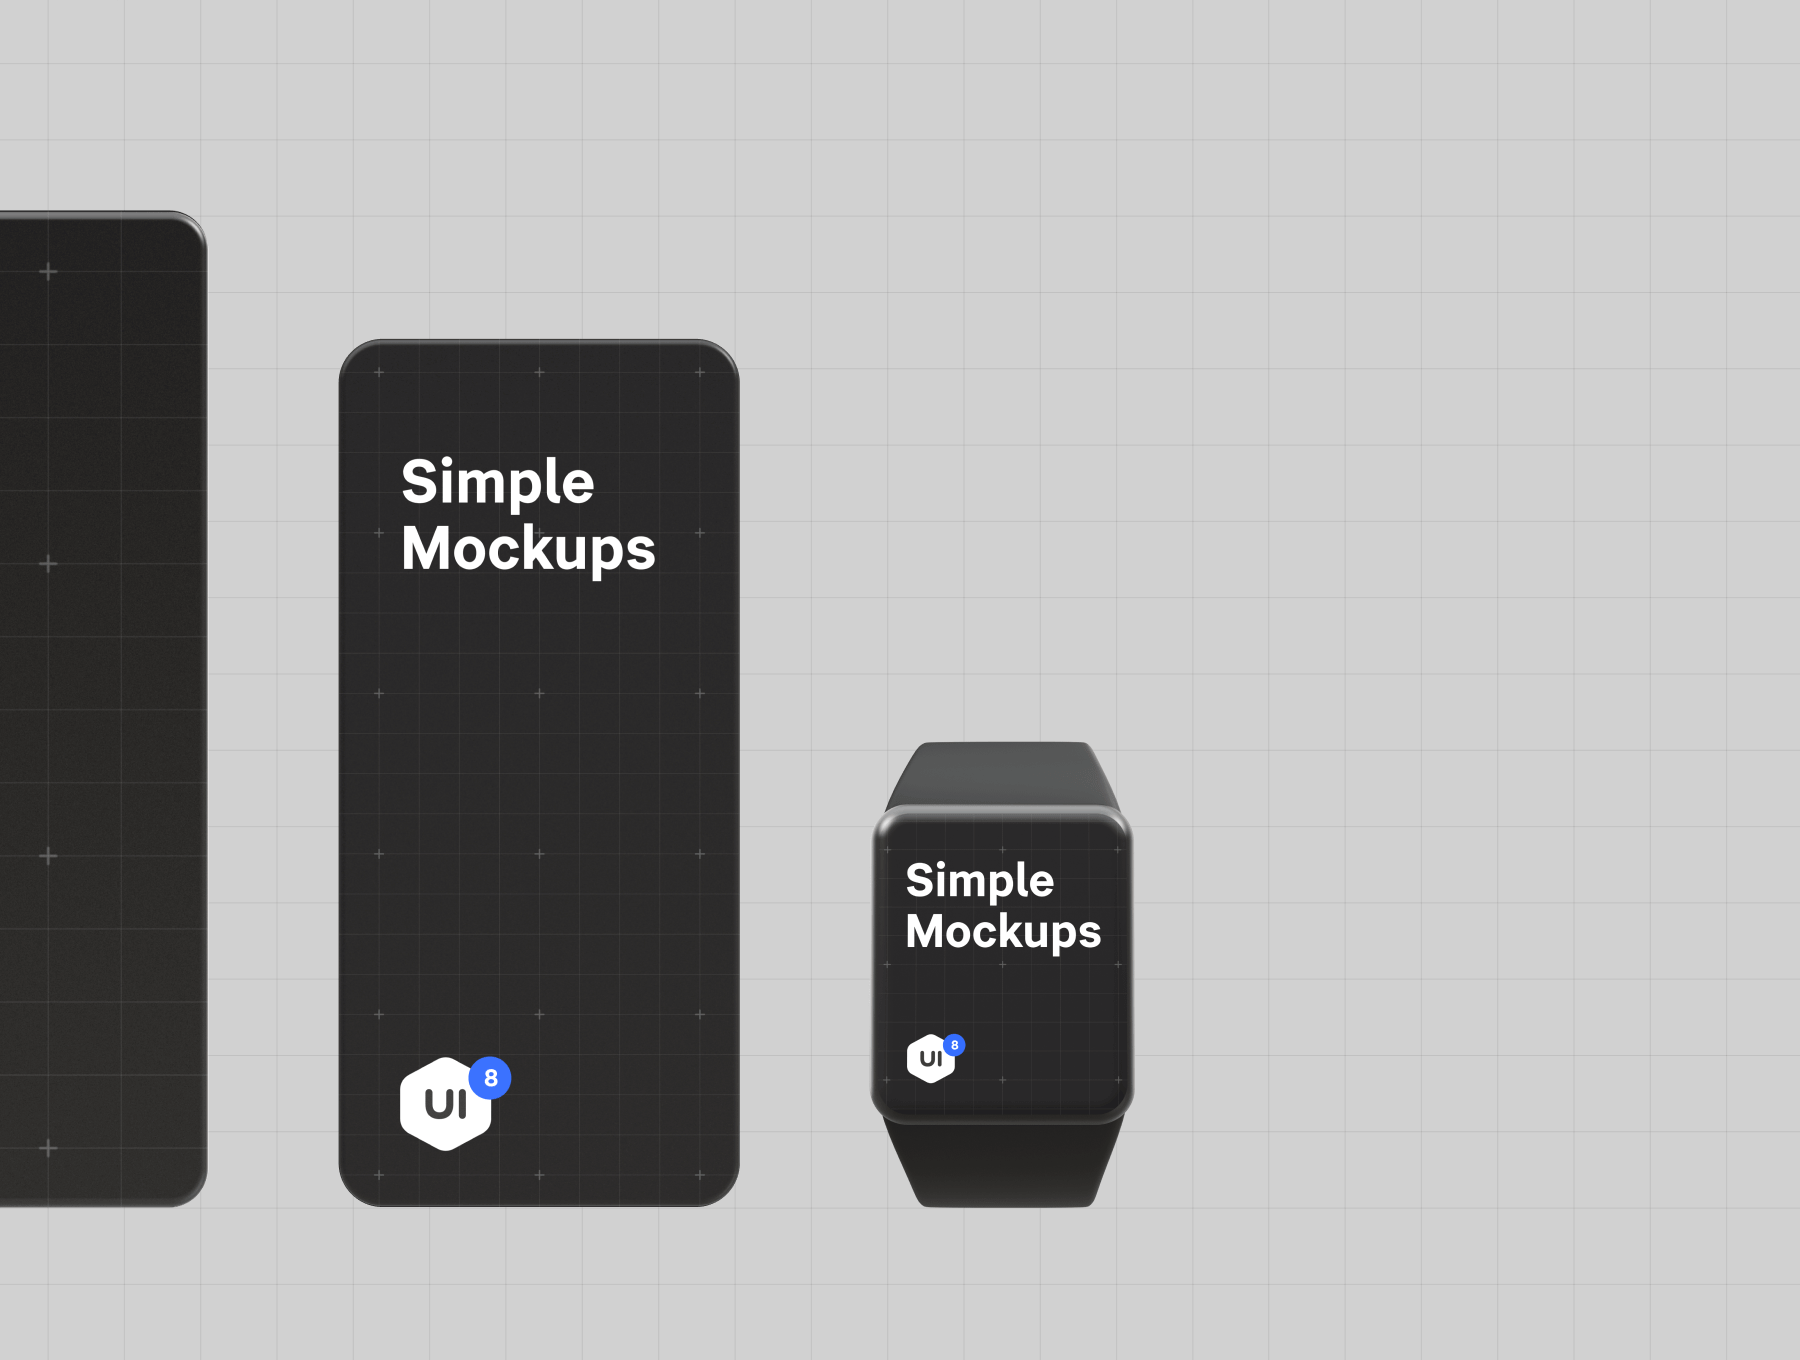 UI作品包装素材模板下载Simple Mockups 2.0插图2